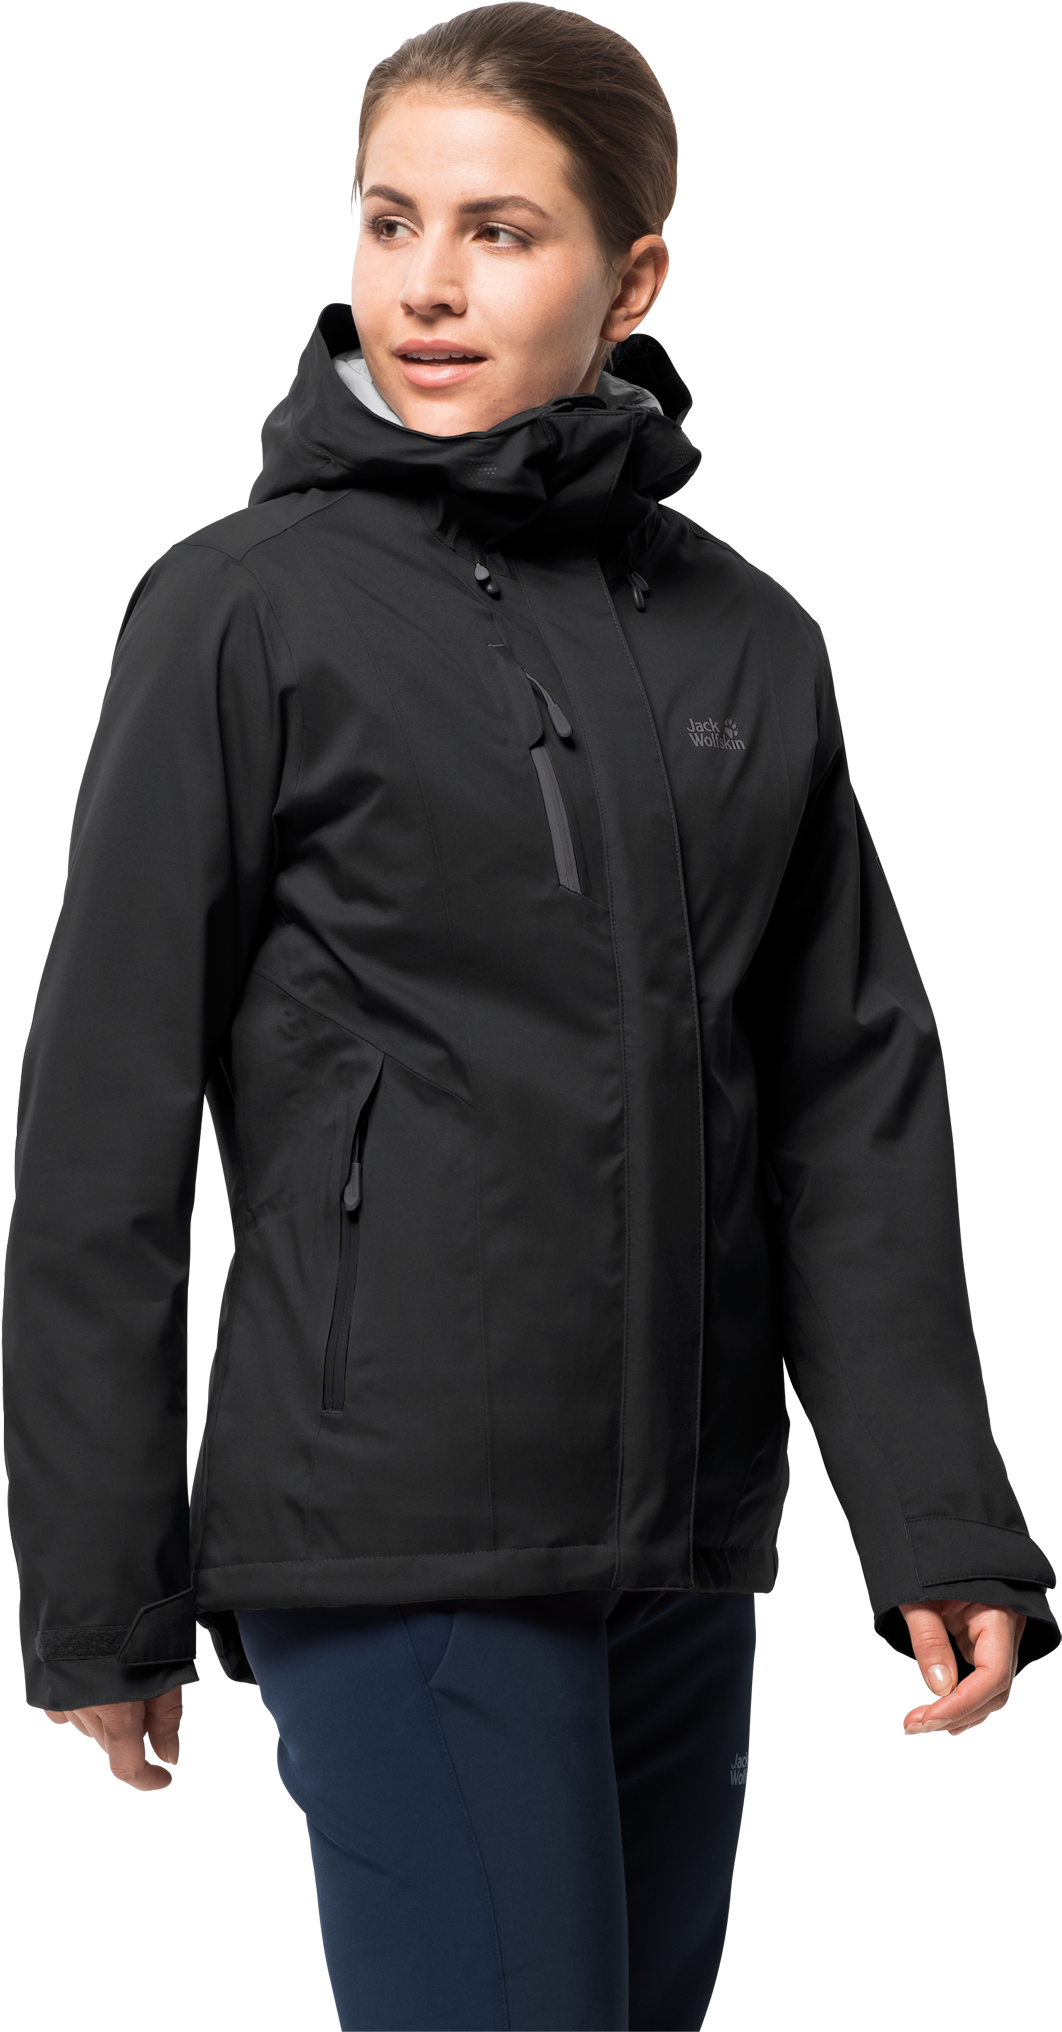 Oversized Denim Jacket Black Men Clipart (2048x2048), Png Download